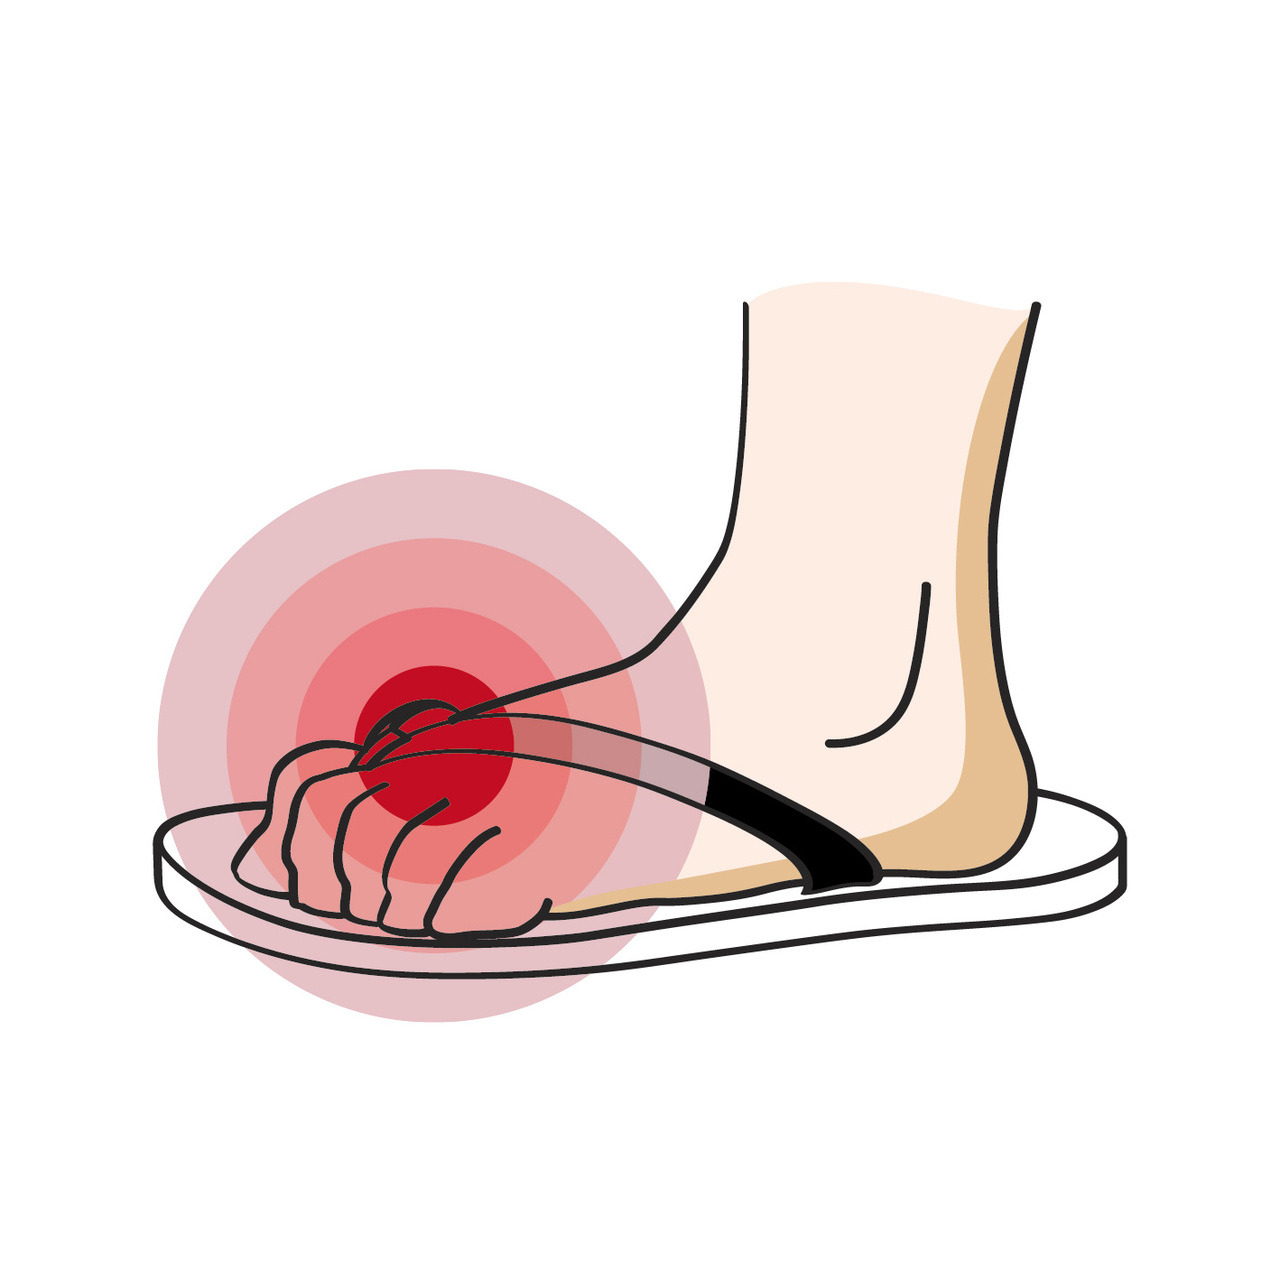 腳背被勒出痕跡好痛:鞋子太緊，走路的姿態也會變得緊繃，腳趾頭要一直出力「夾」住夾腳拖,鞋子太鬆，無法安穩套在腳上